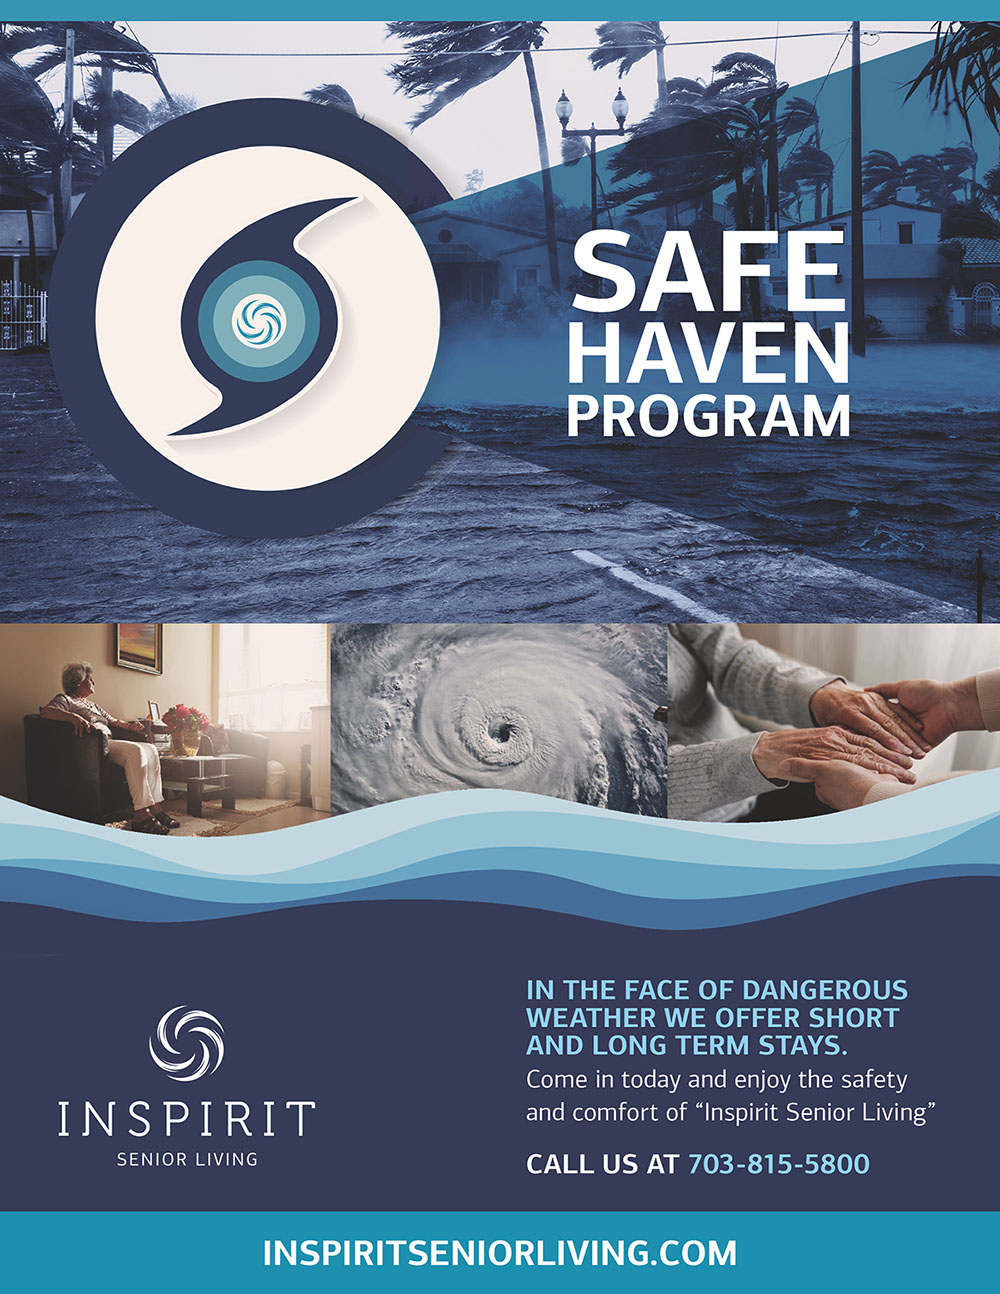 Inspirit Senior Living Safe Haven Program